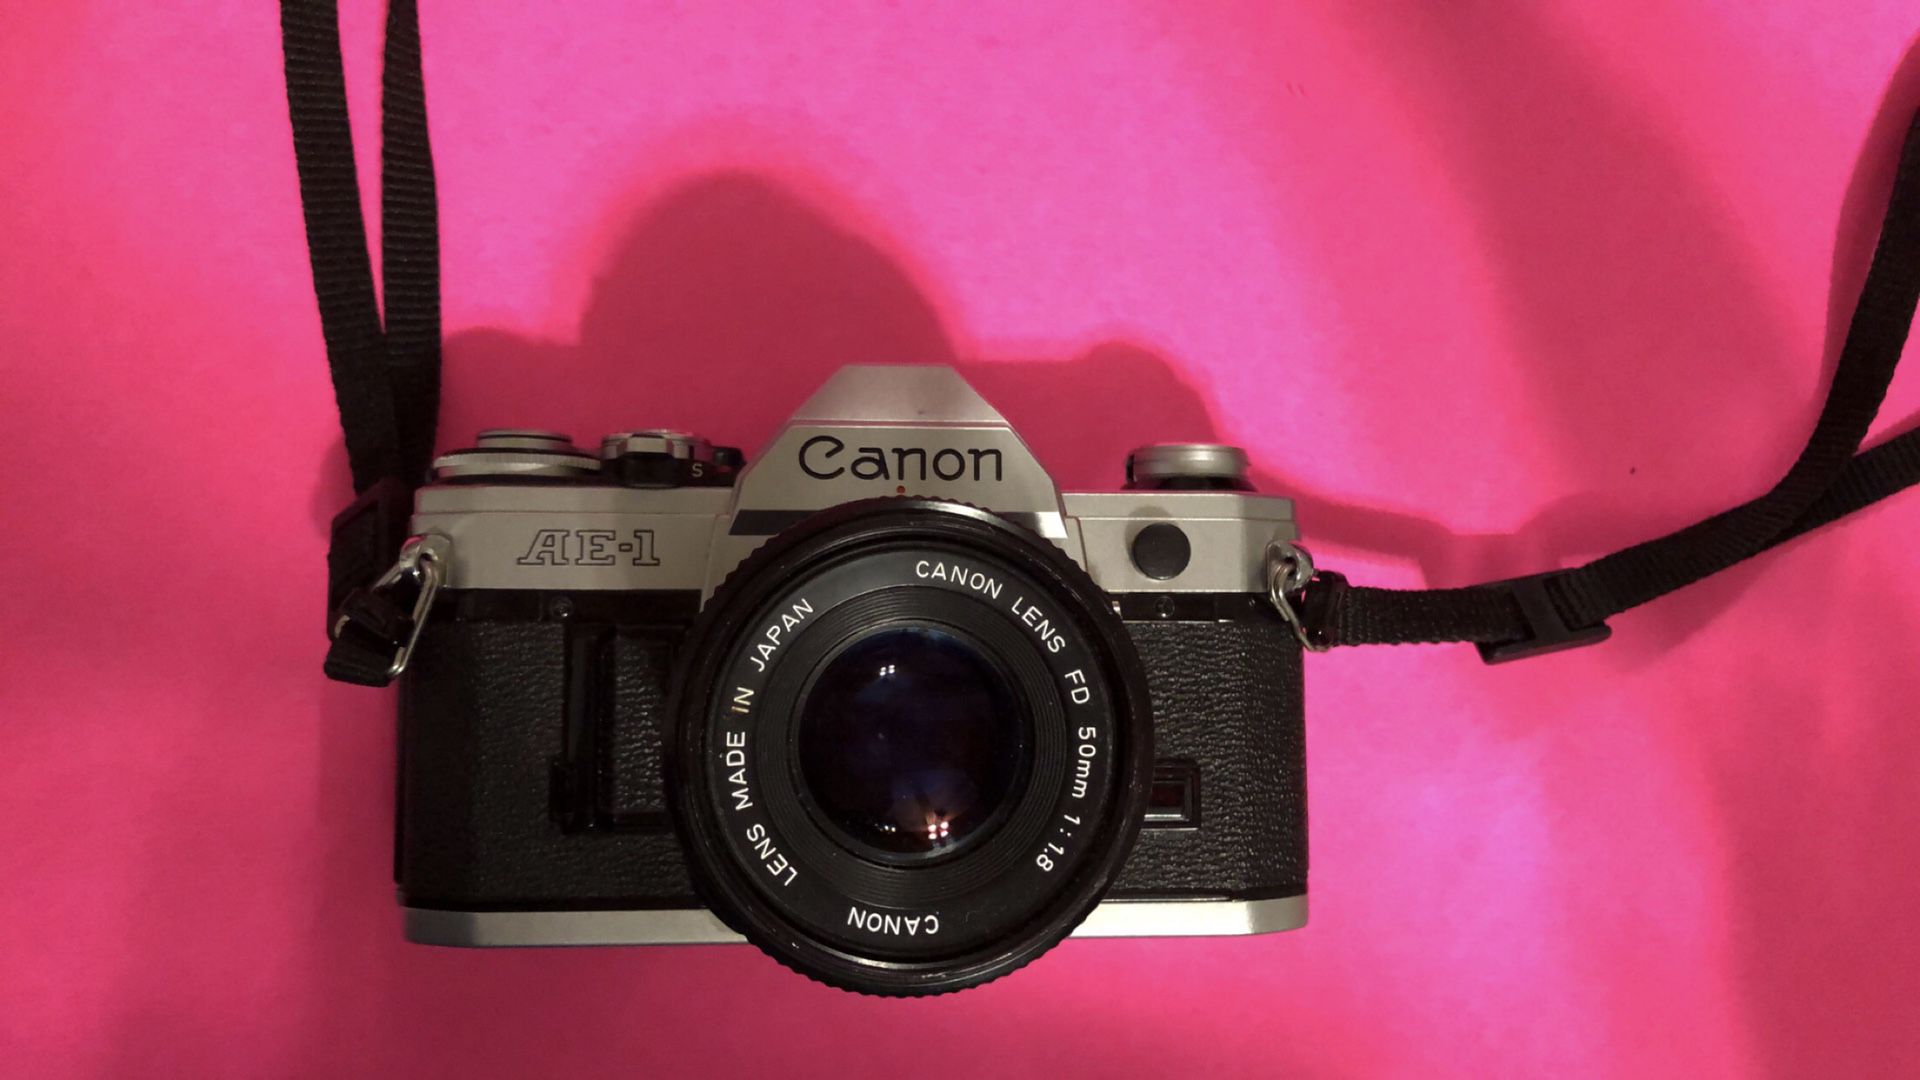 Canon SLR film camera.